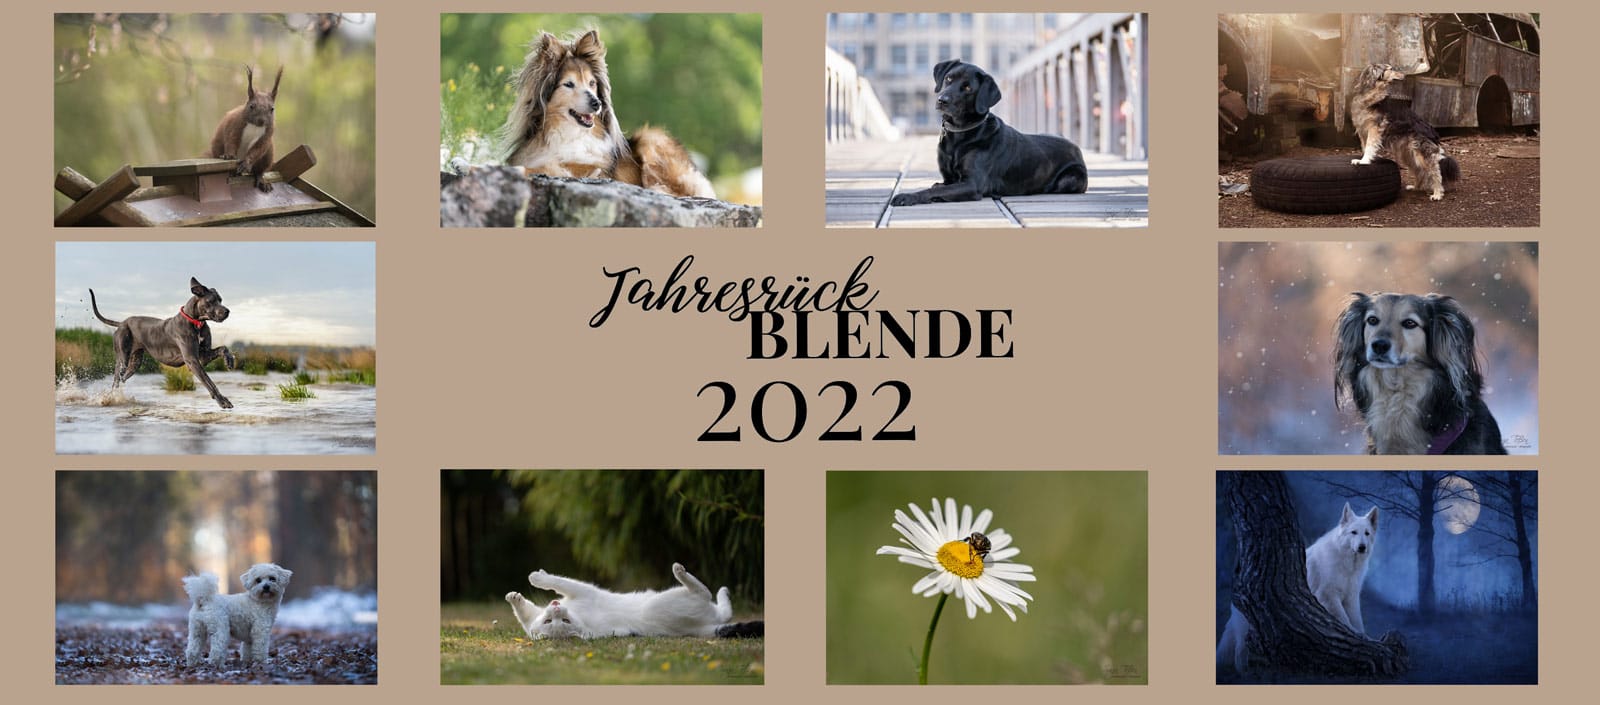 You are currently viewing JahresrückBLENDE 2022